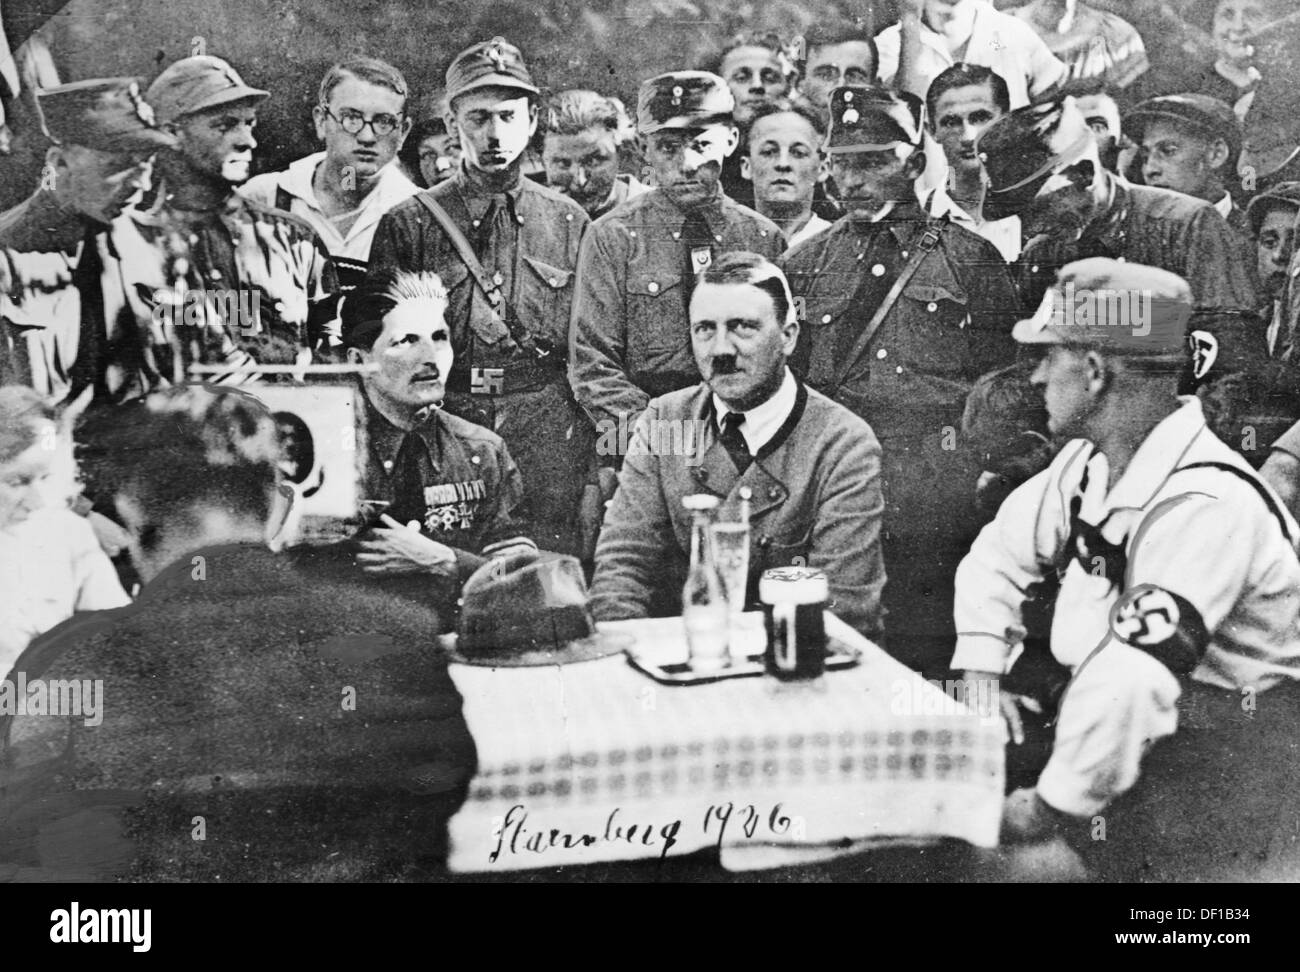 Adolf Hitler viene fotografato con i suoi sostenitori a Starnberg, in Germania, nel 1926. Fotoarchiv für Zeitgeschichte Foto Stock